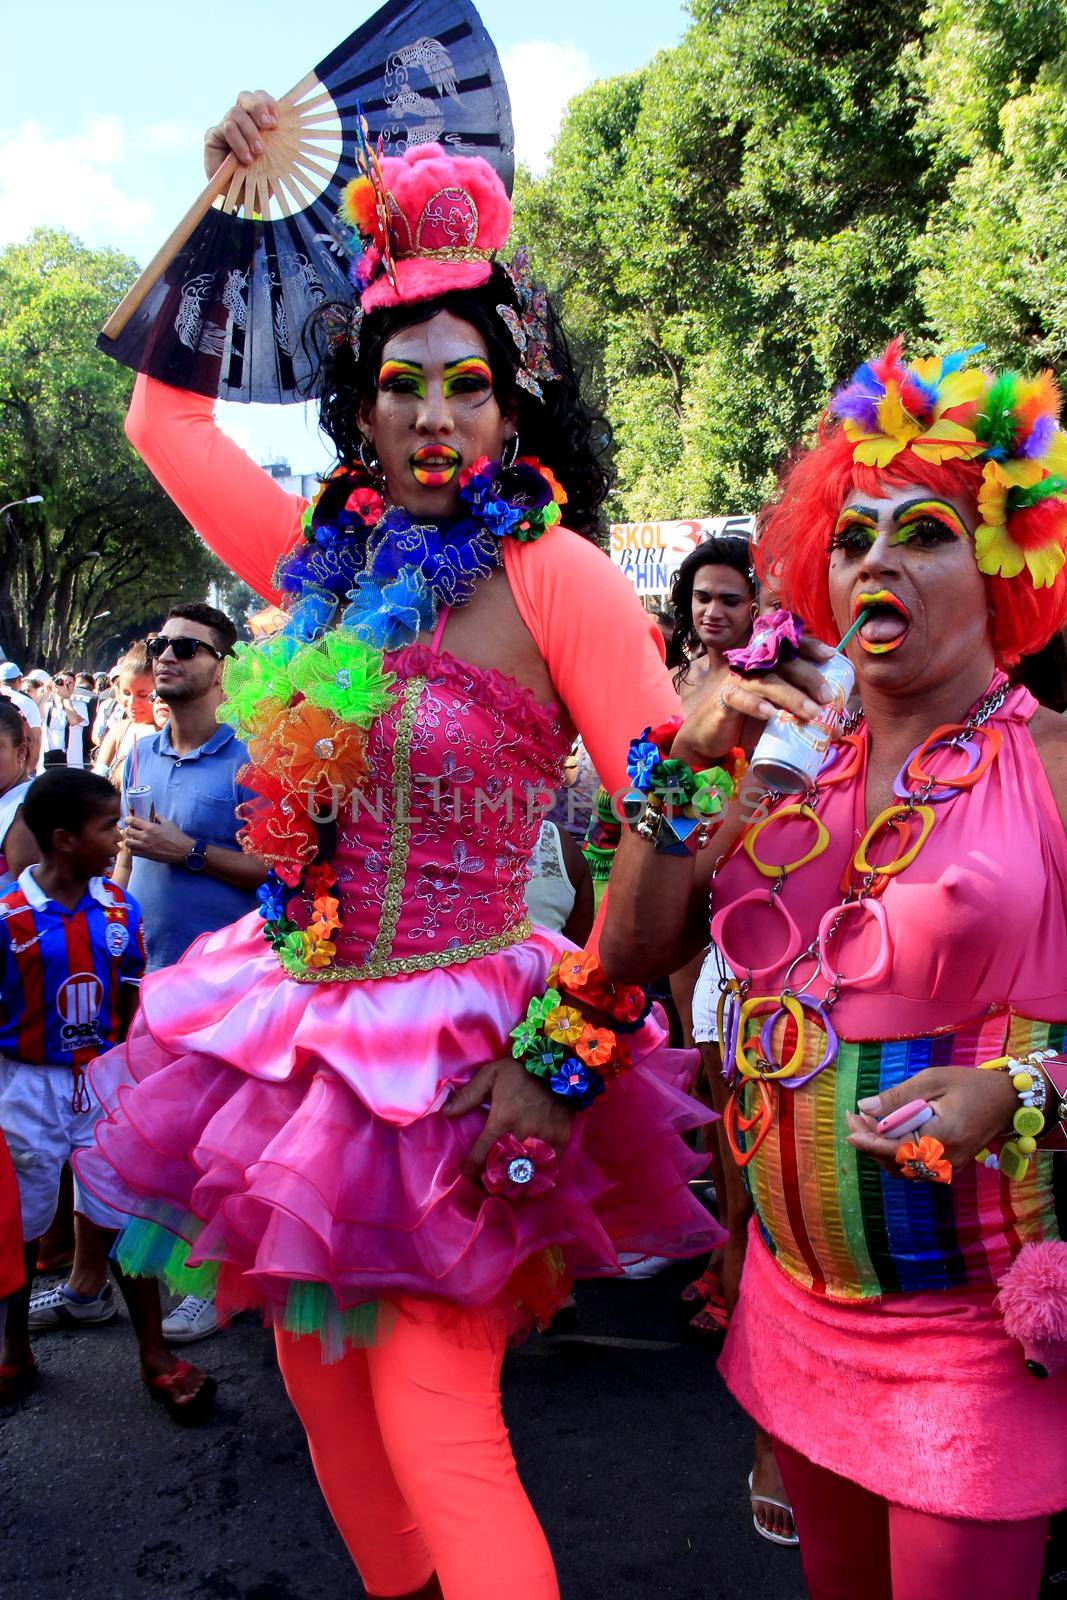 gay pride parade in salvador by joasouza